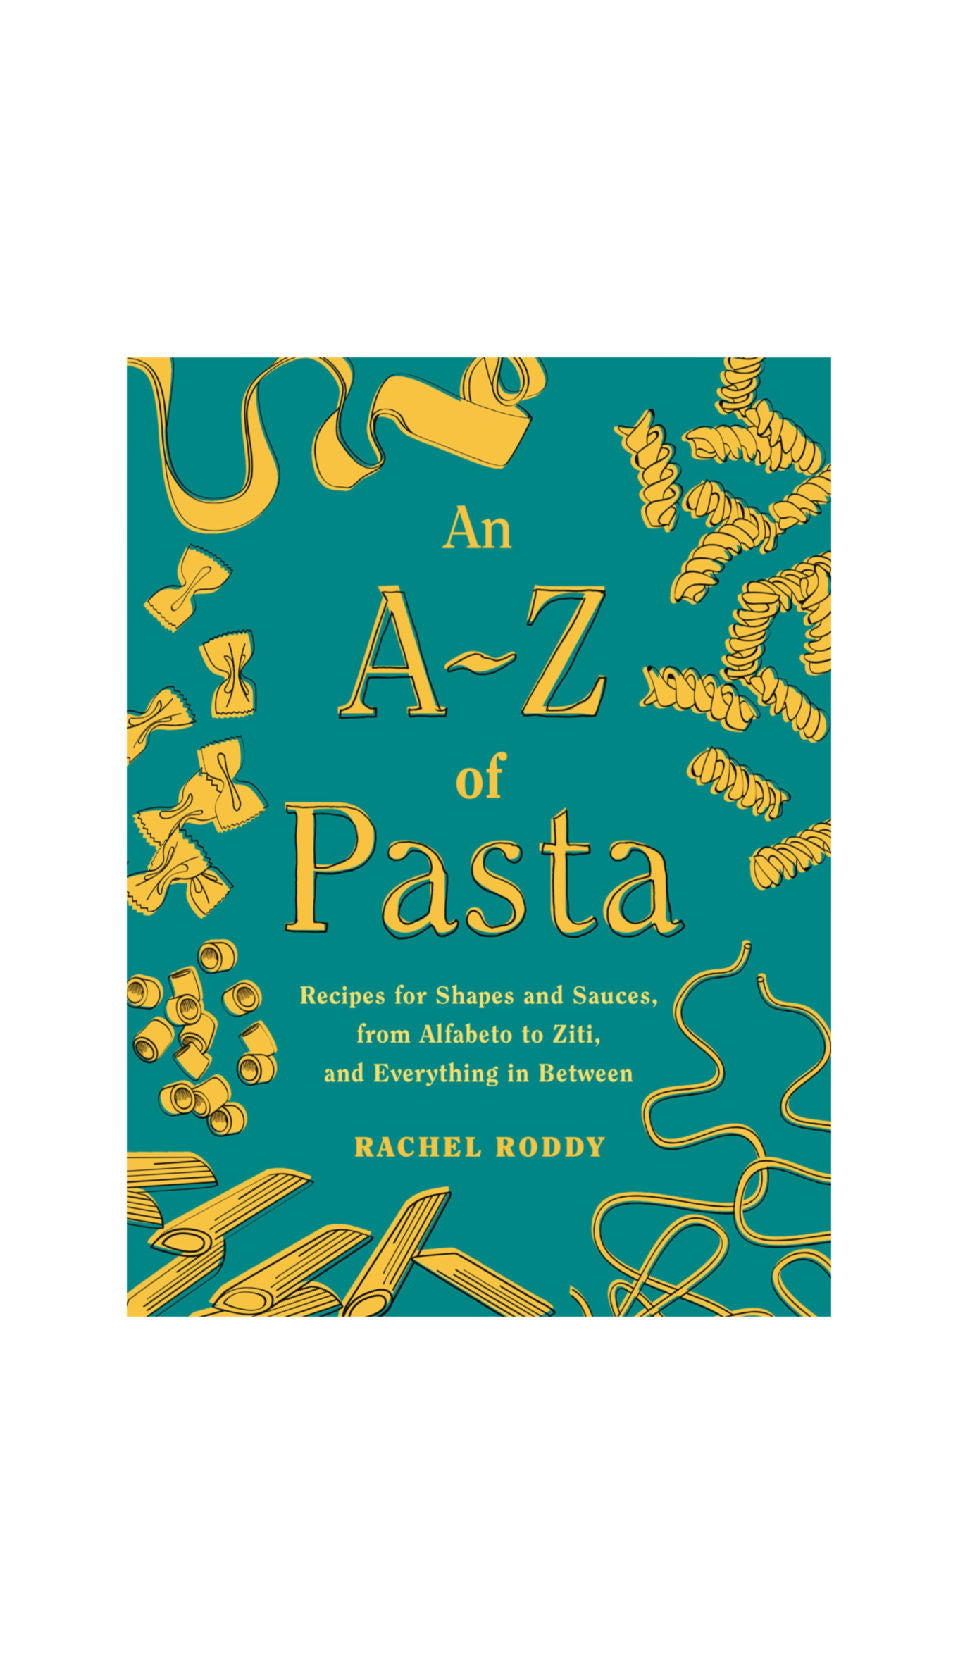 An A - Z of Pasta / RACHEL RODDY